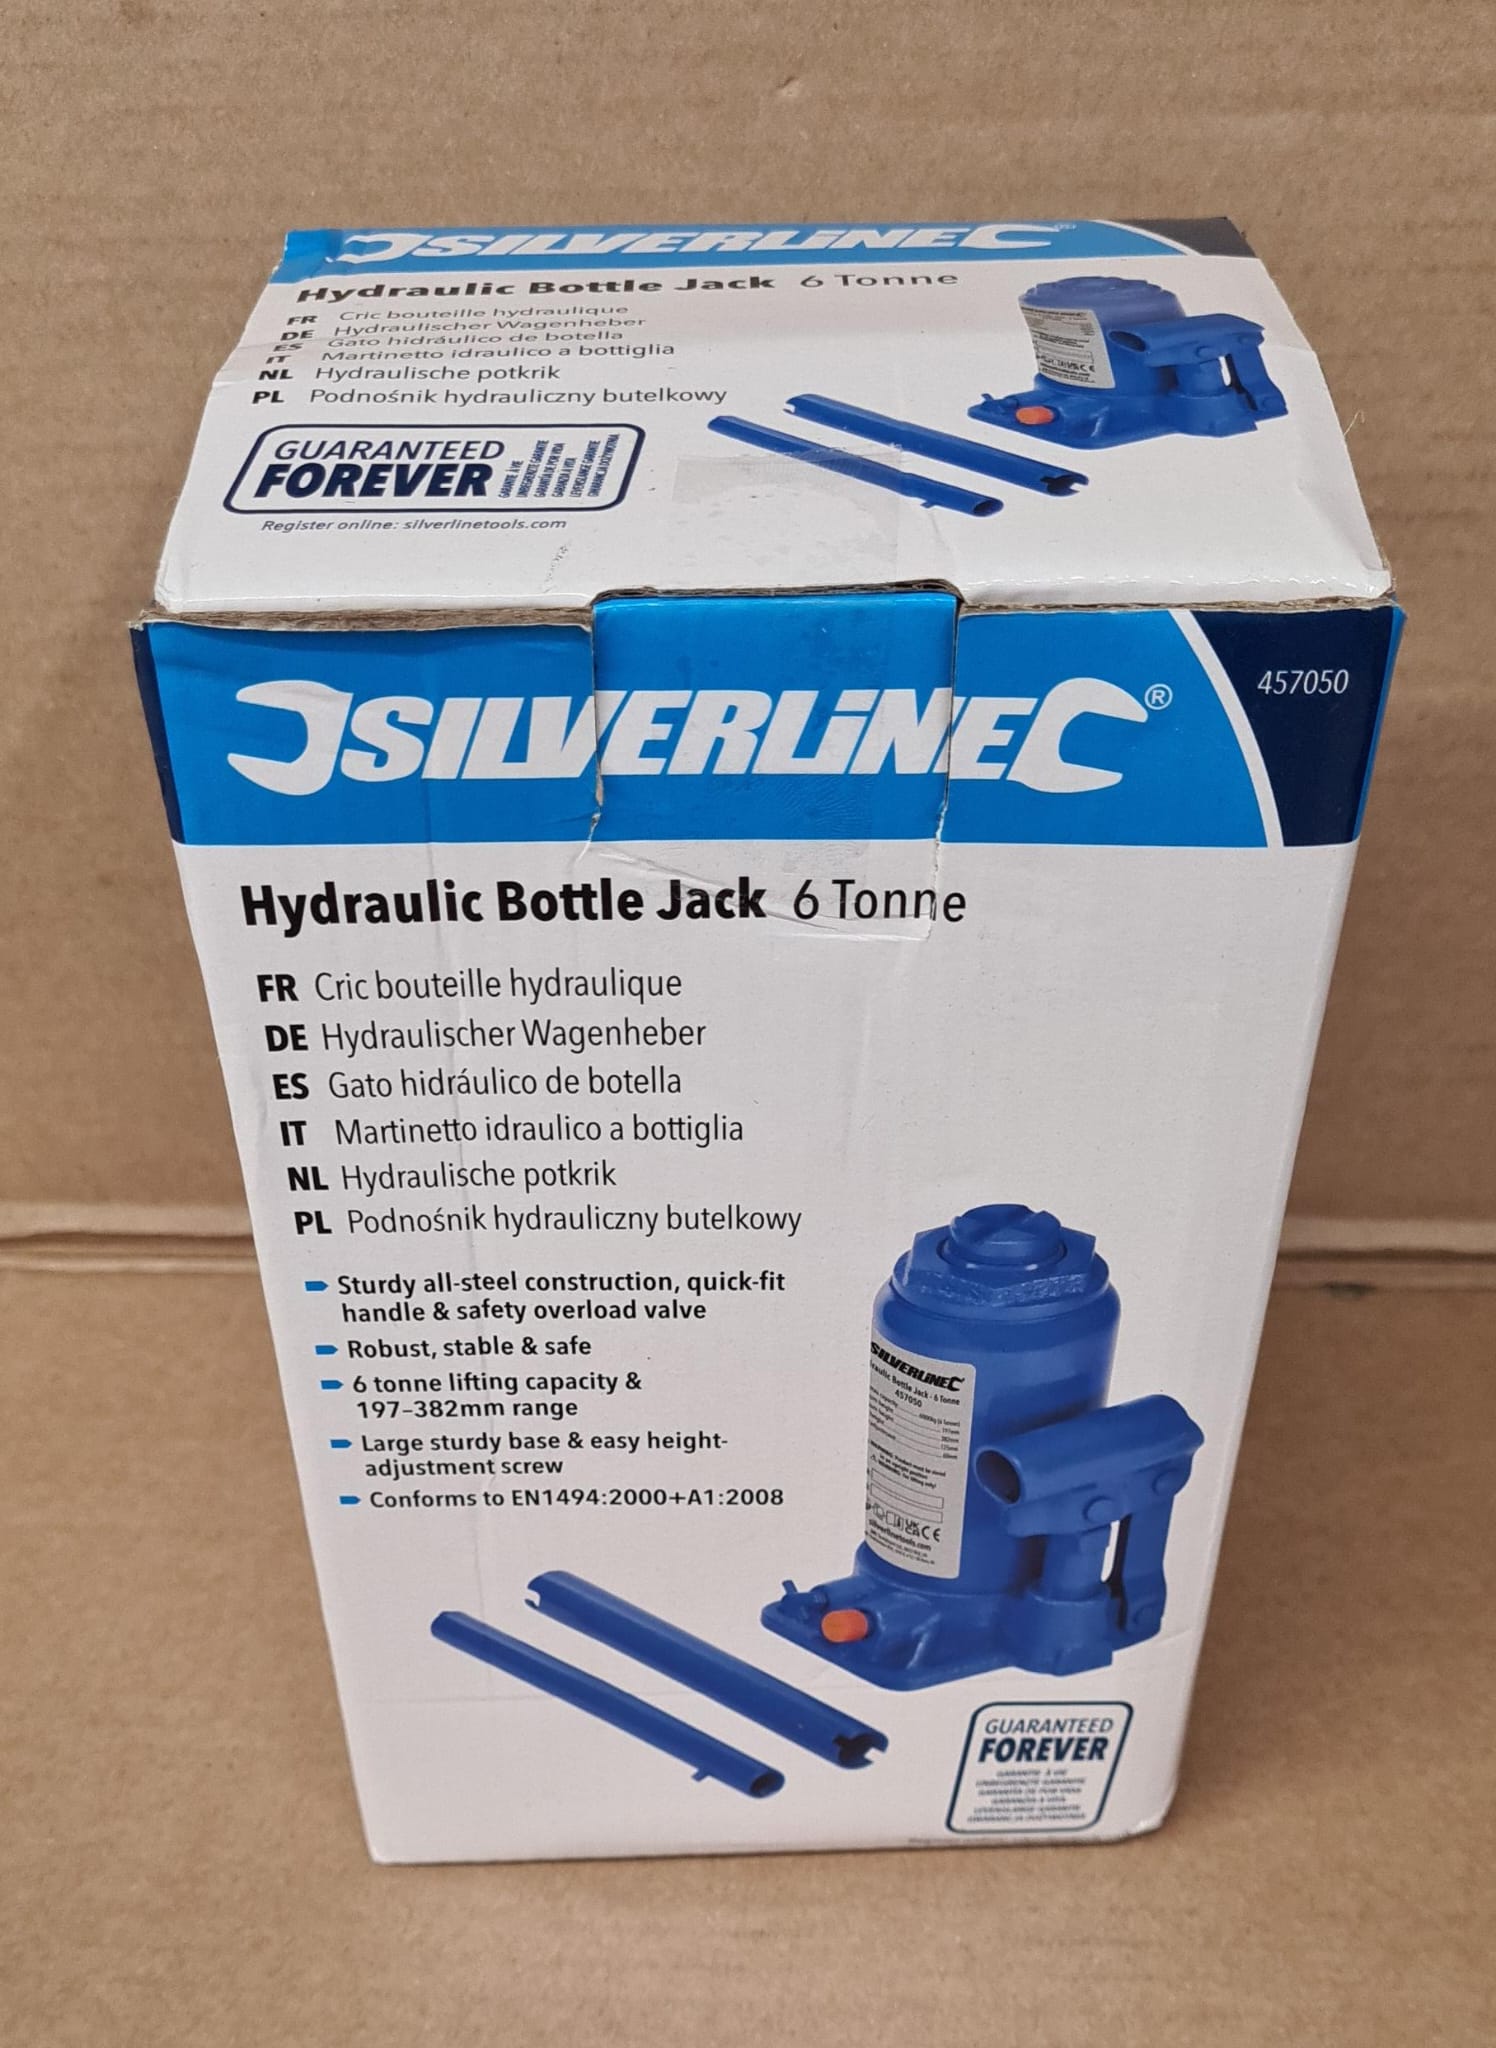 Silverline-457050 Hydraulischer Wagenheber 6 t-6393